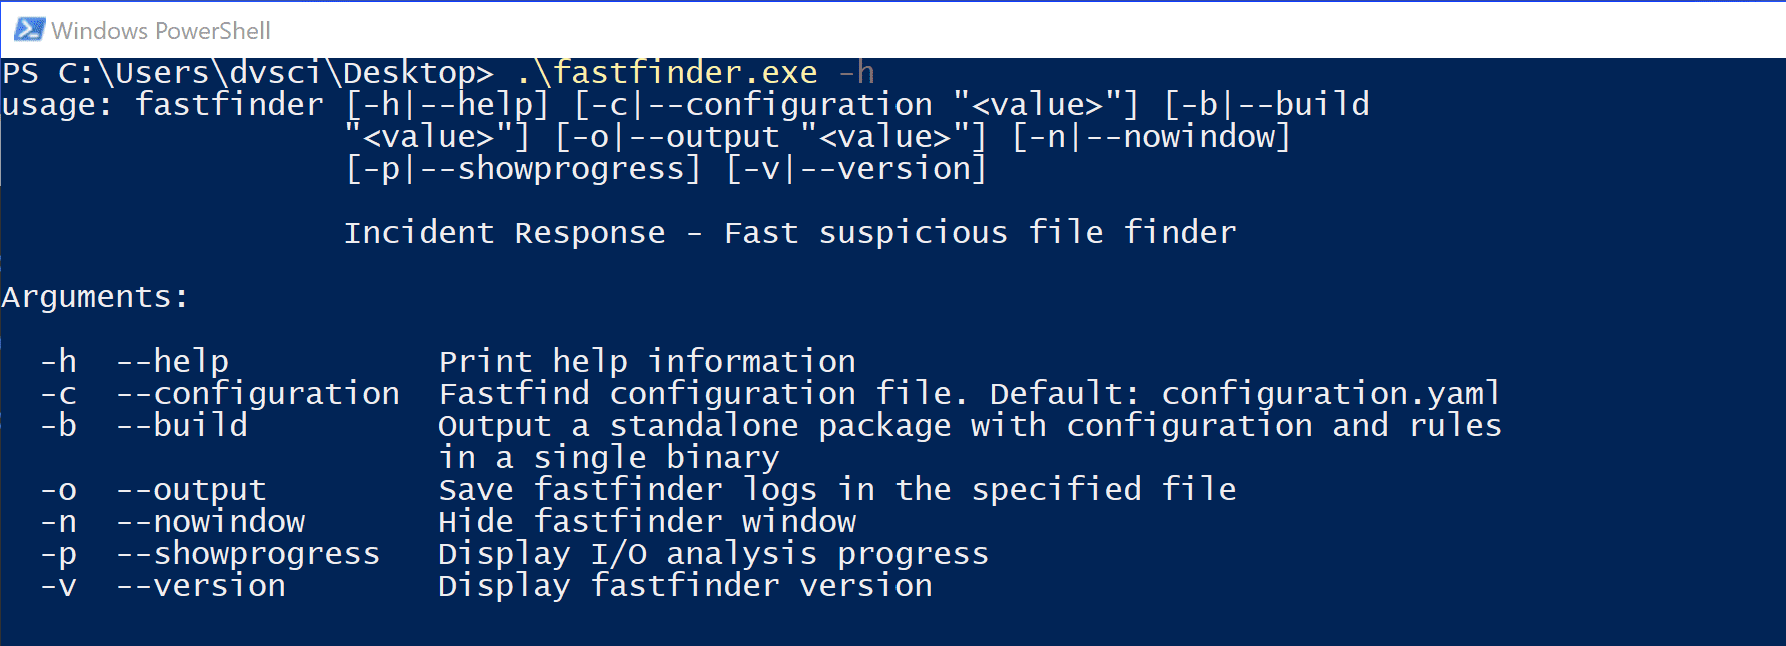 Fastfinder: Fast Suspicious File Finder